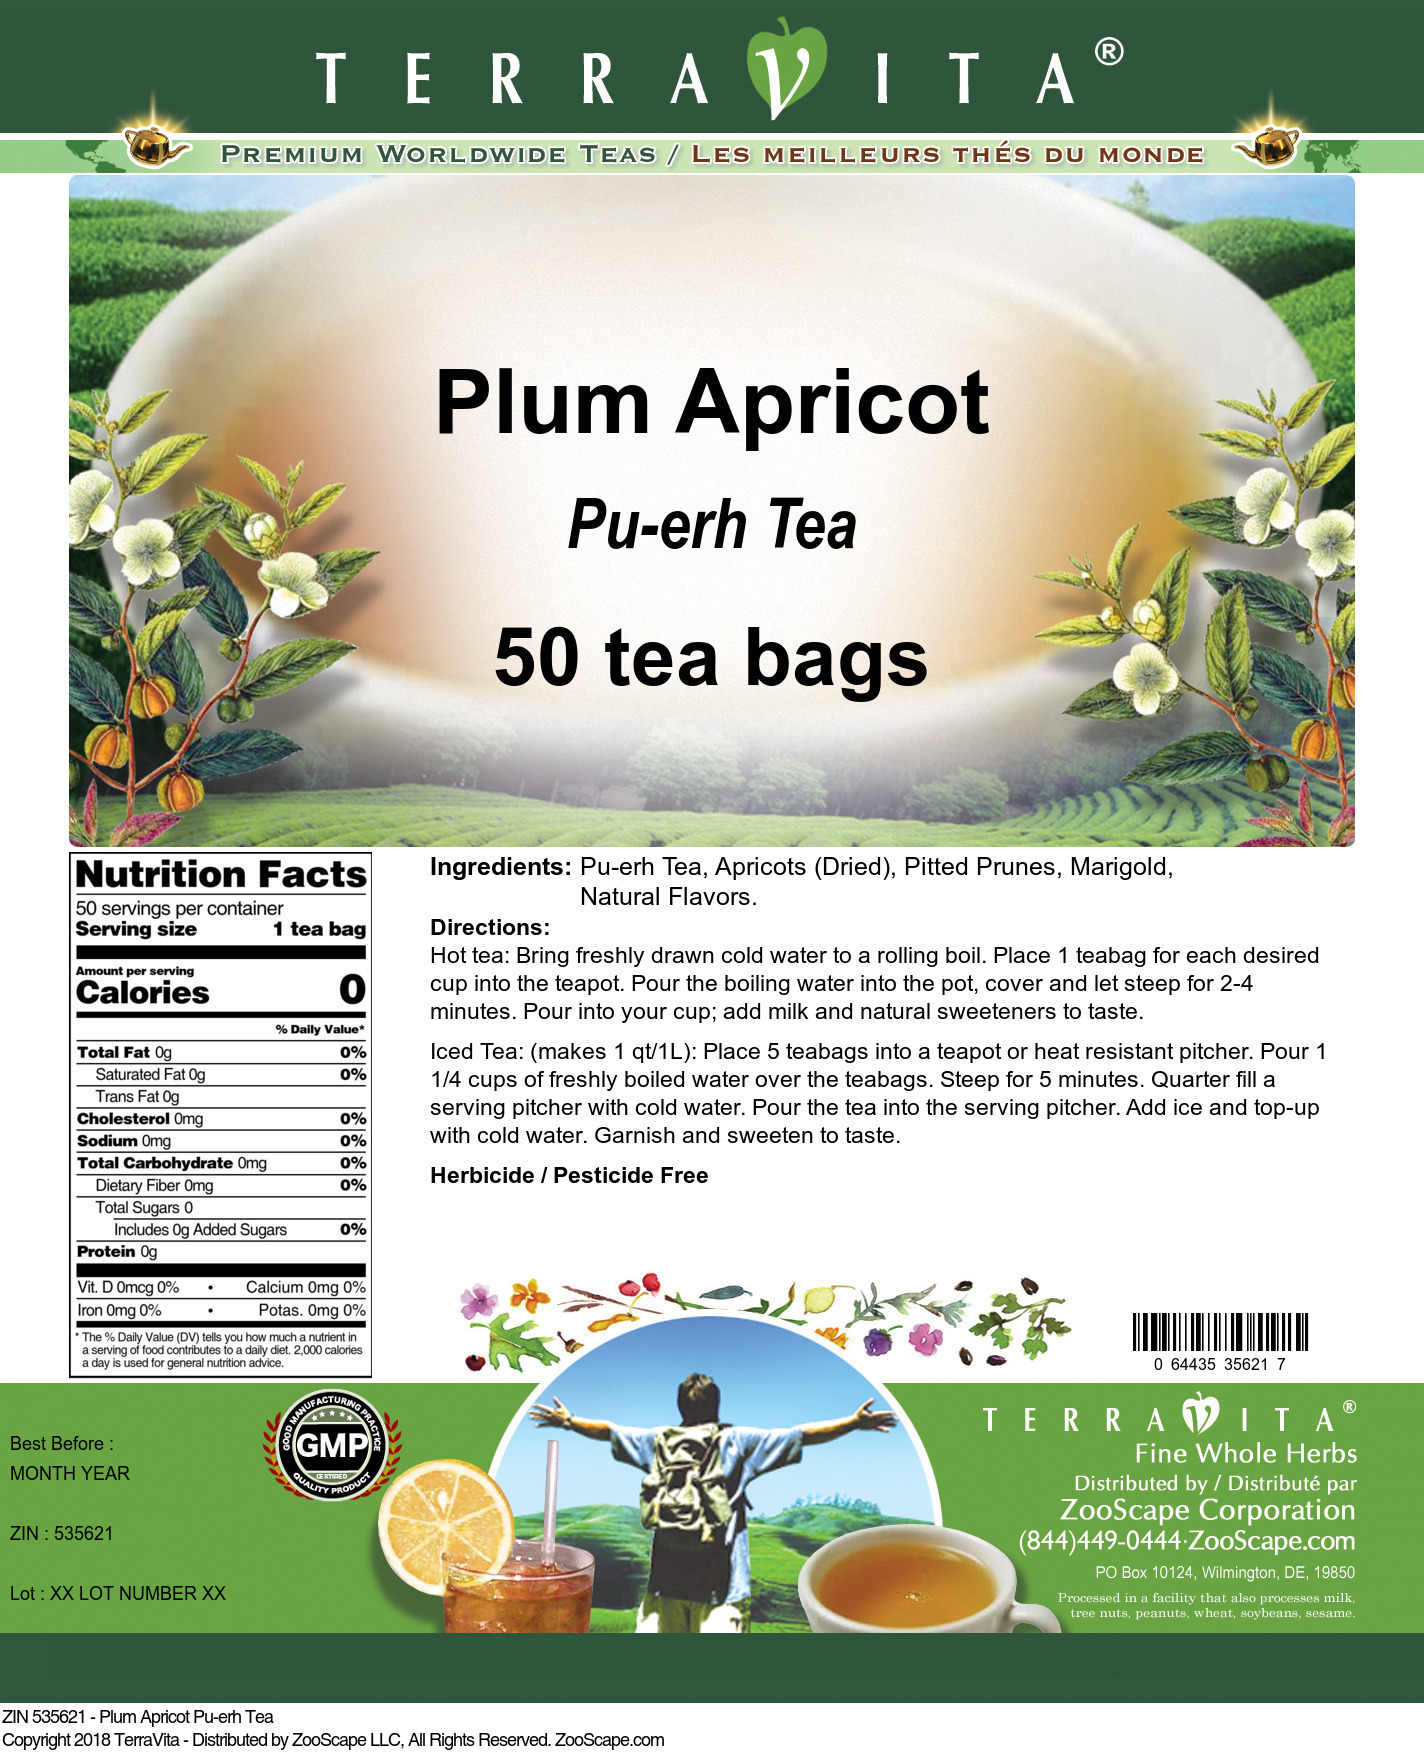 Plum Apricot Pu-erh Tea - Label